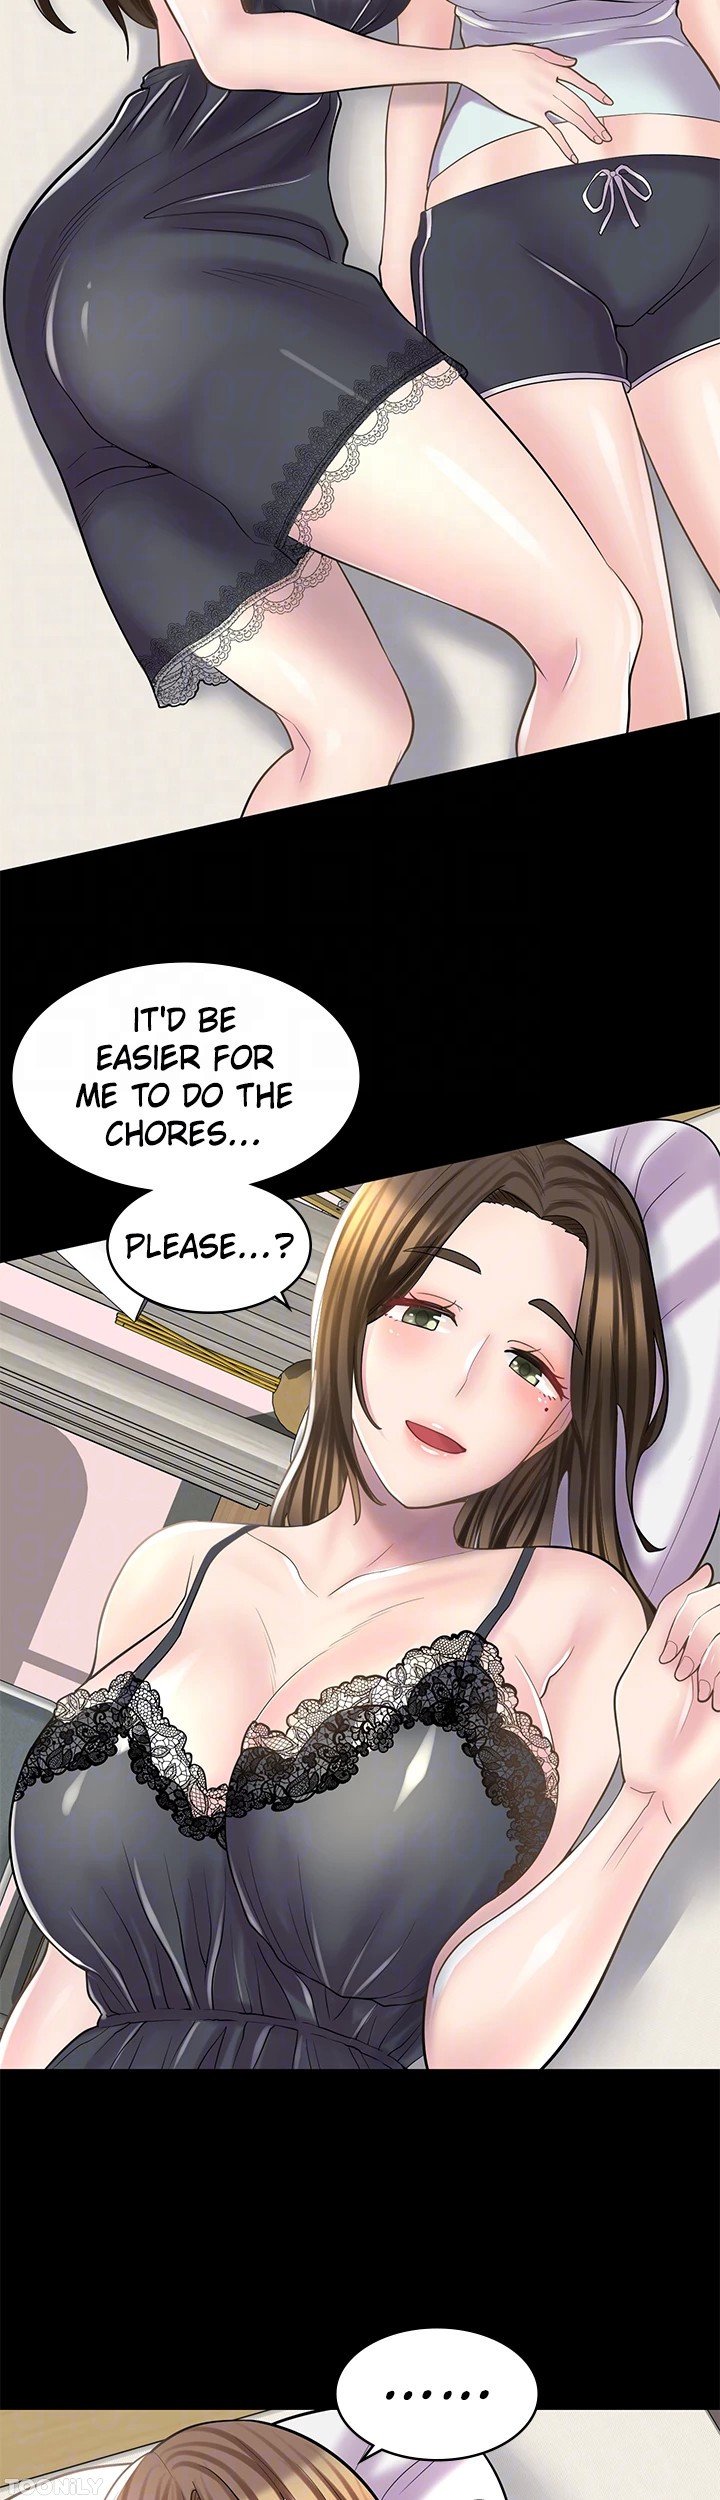 erotic-manga-cafe-girls-chap-23-12